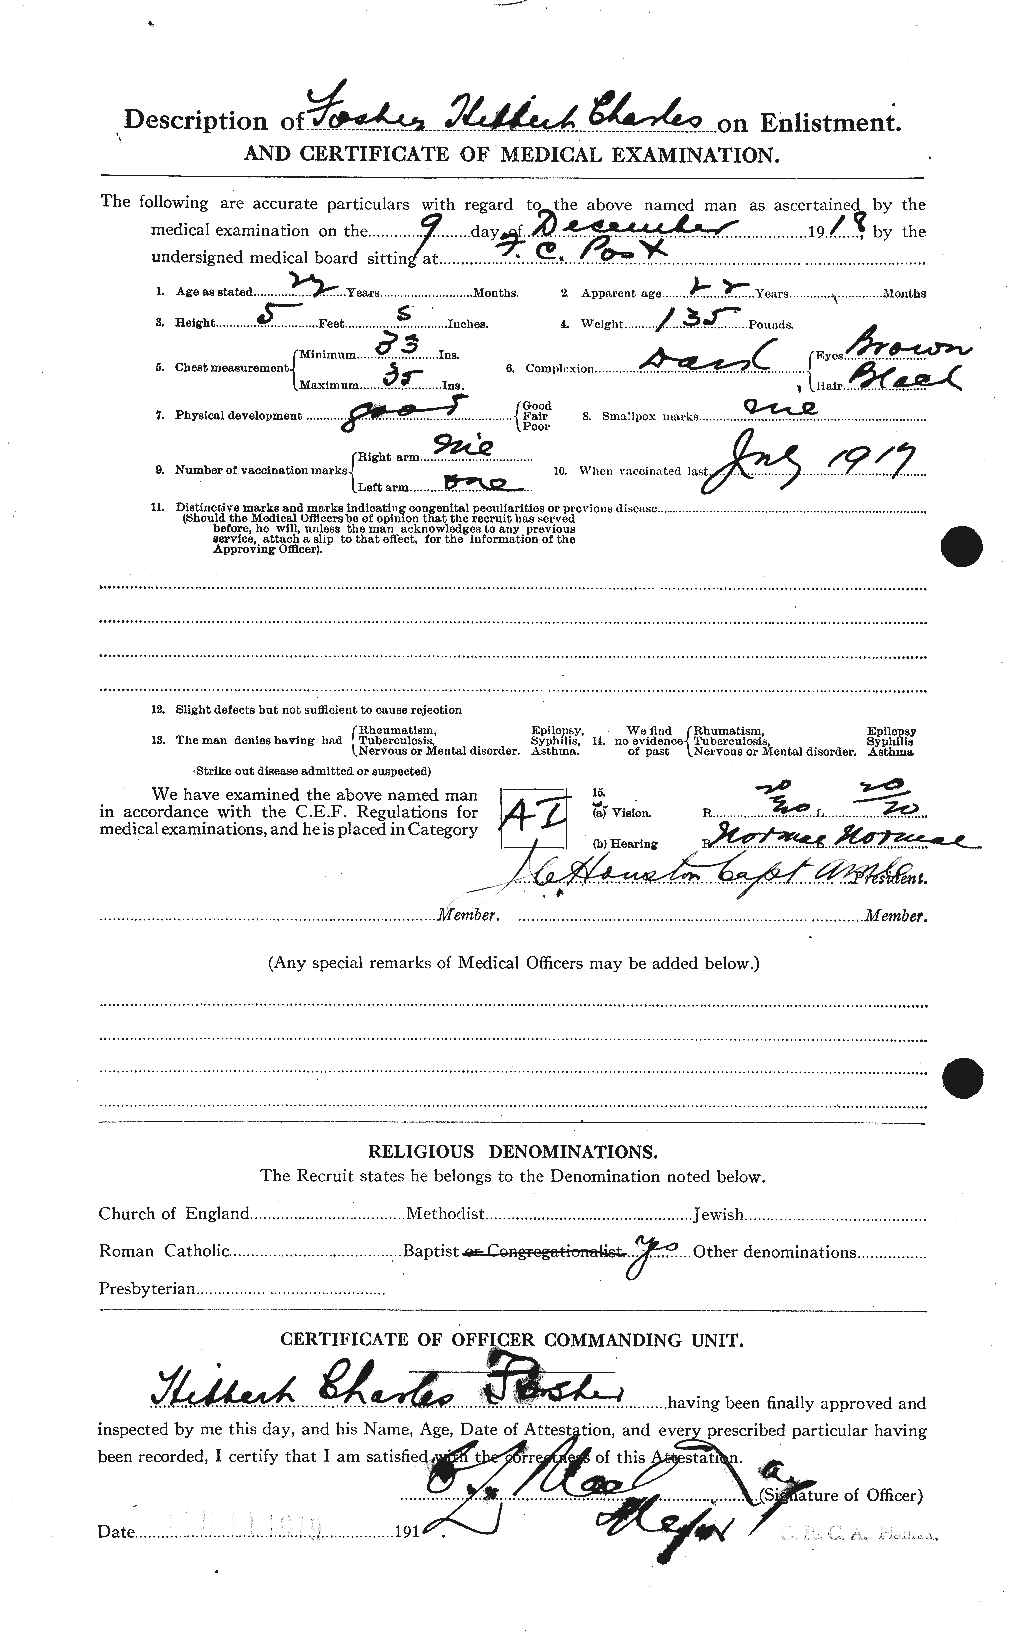 Dossiers du Personnel de la Première Guerre mondiale - CEC 333256b